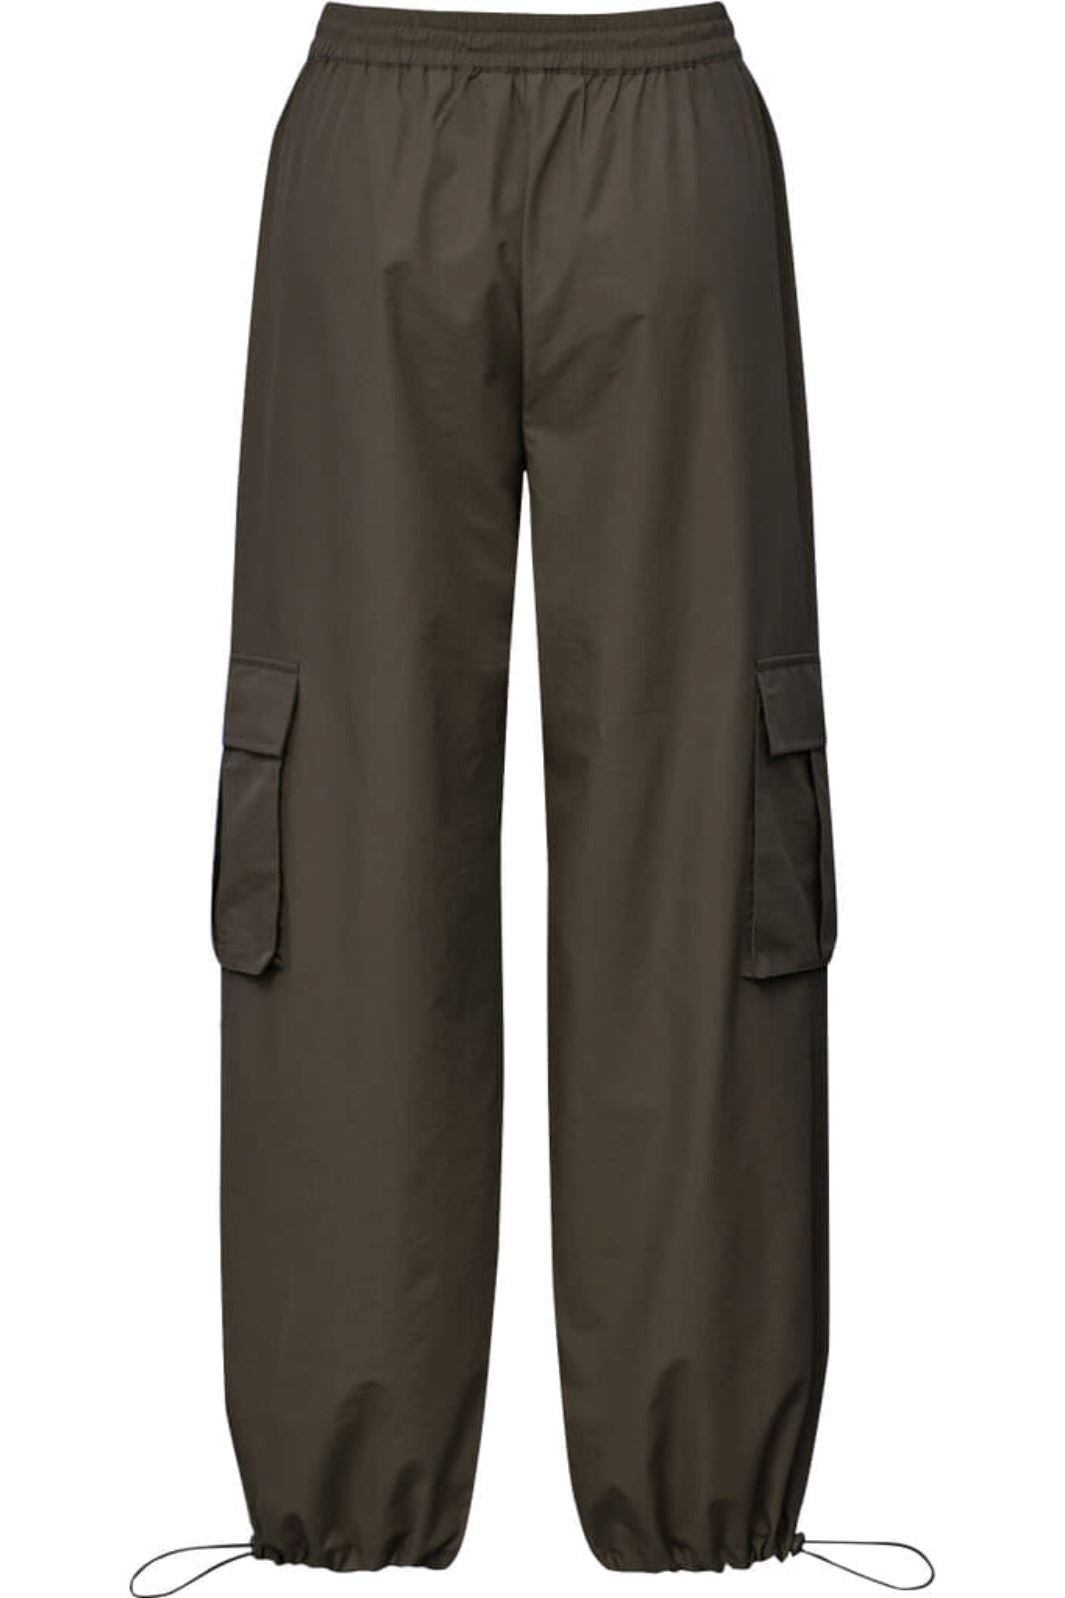 A-Veiw - Cargo Pants - Brown Bukser 